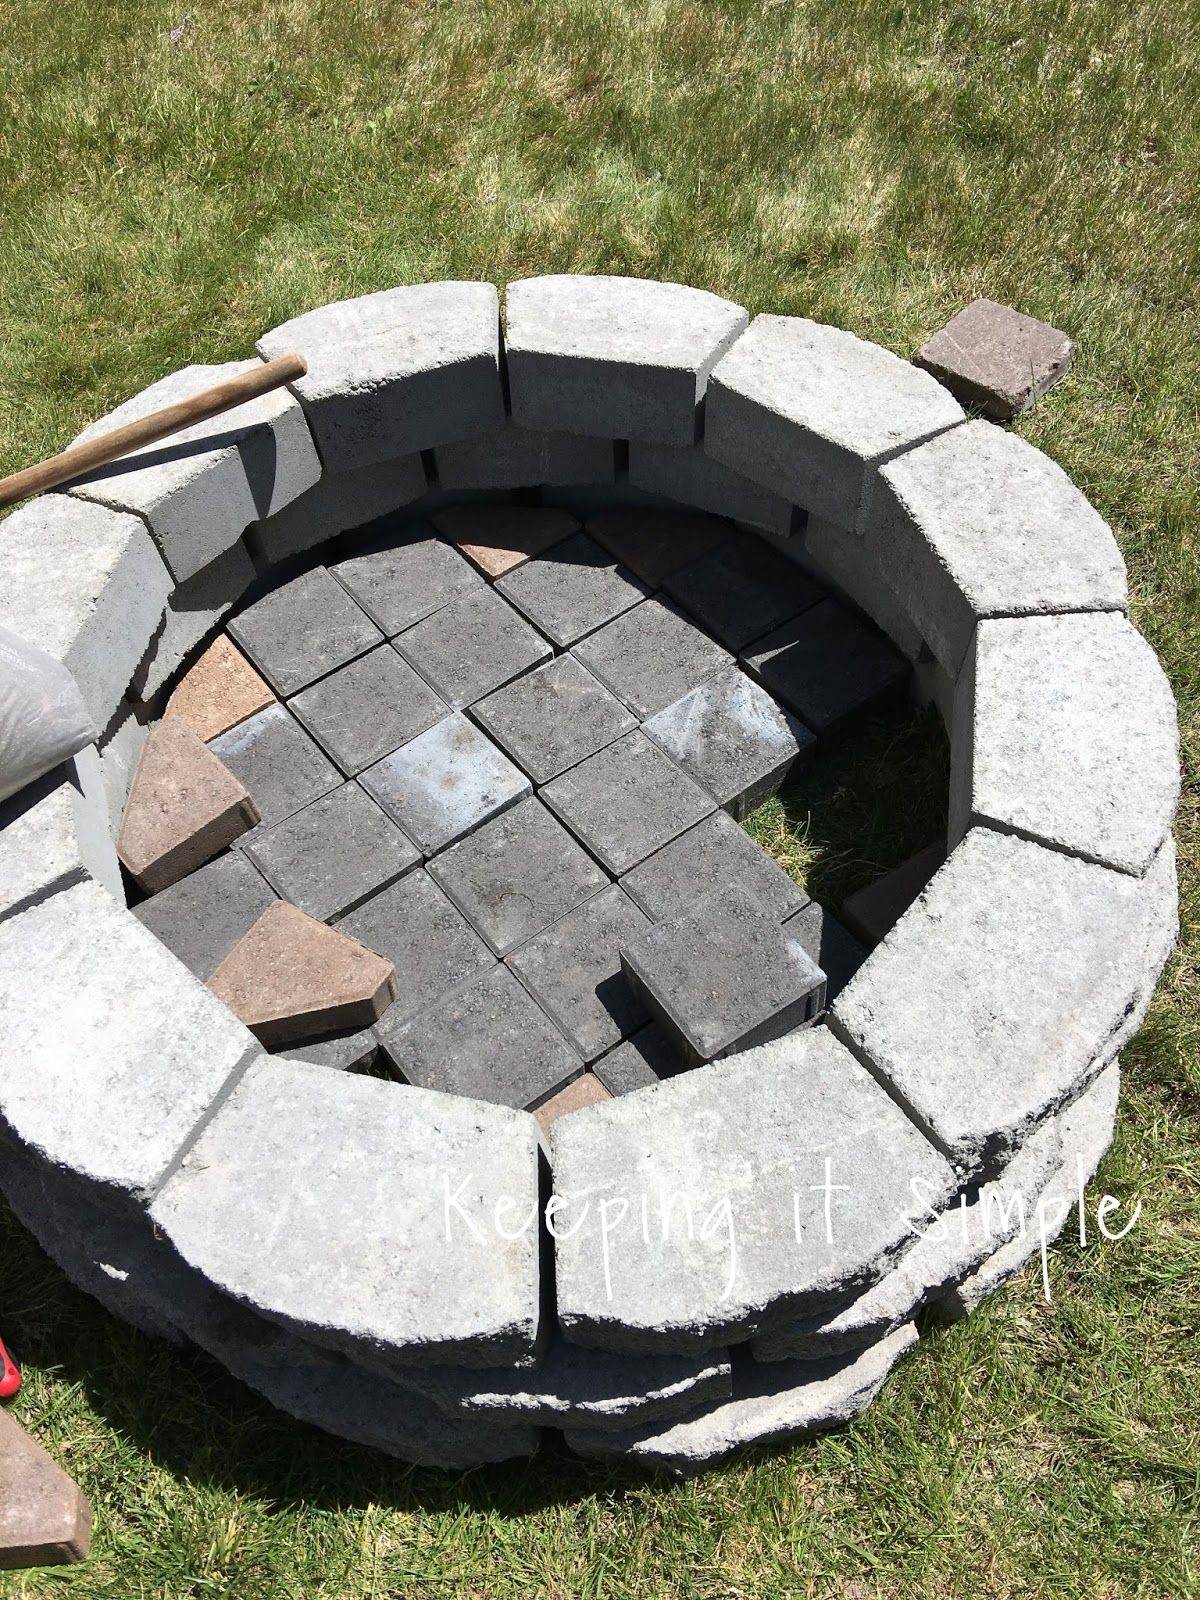 Очаг для костра своими руками: круглый, квадратный, из бетона, кирпича, камня (25 фото)